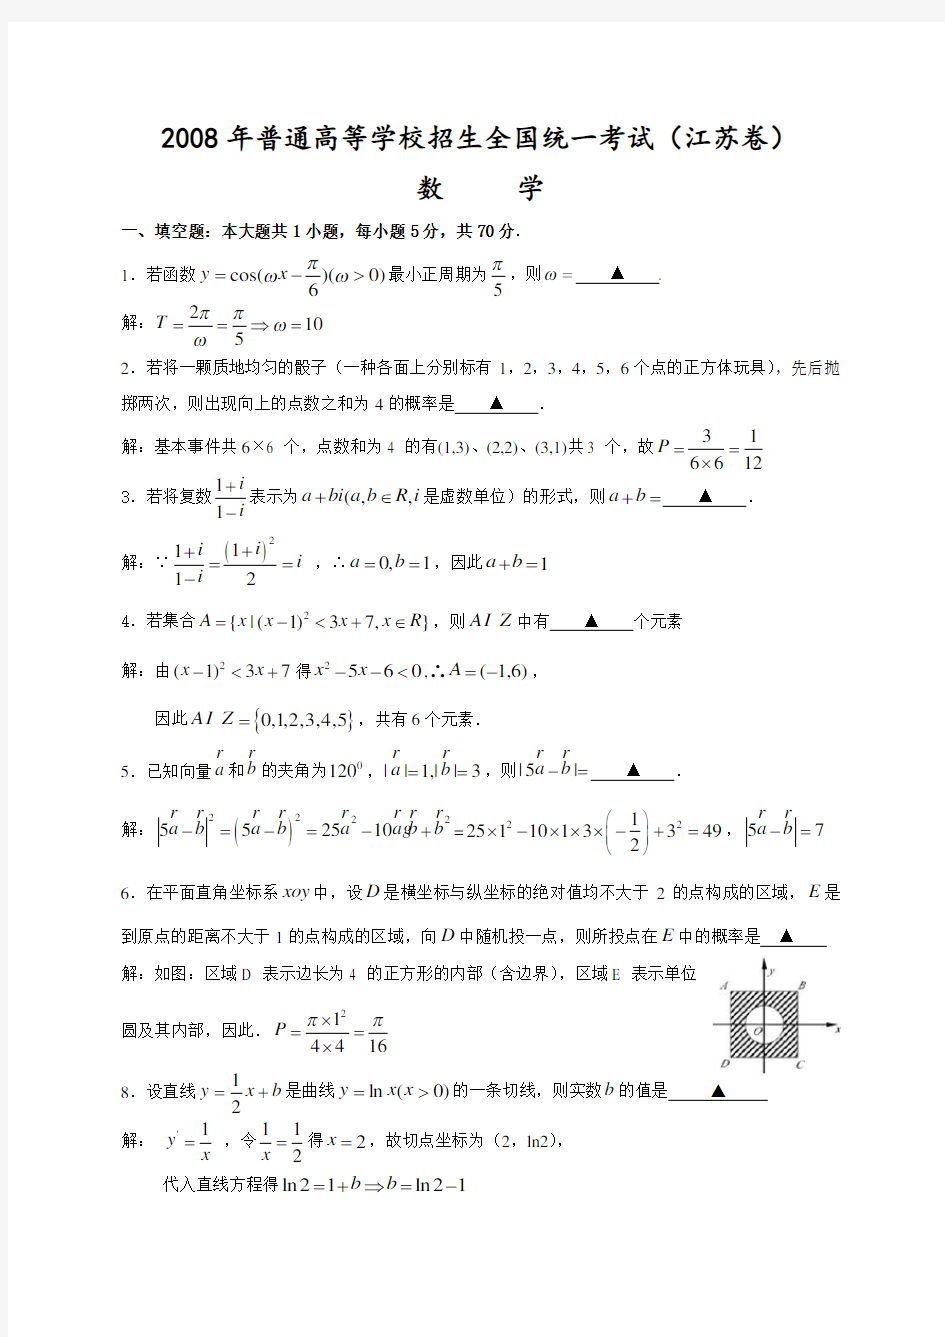 2008高考江苏数学试卷含附加题详细解答全版080718